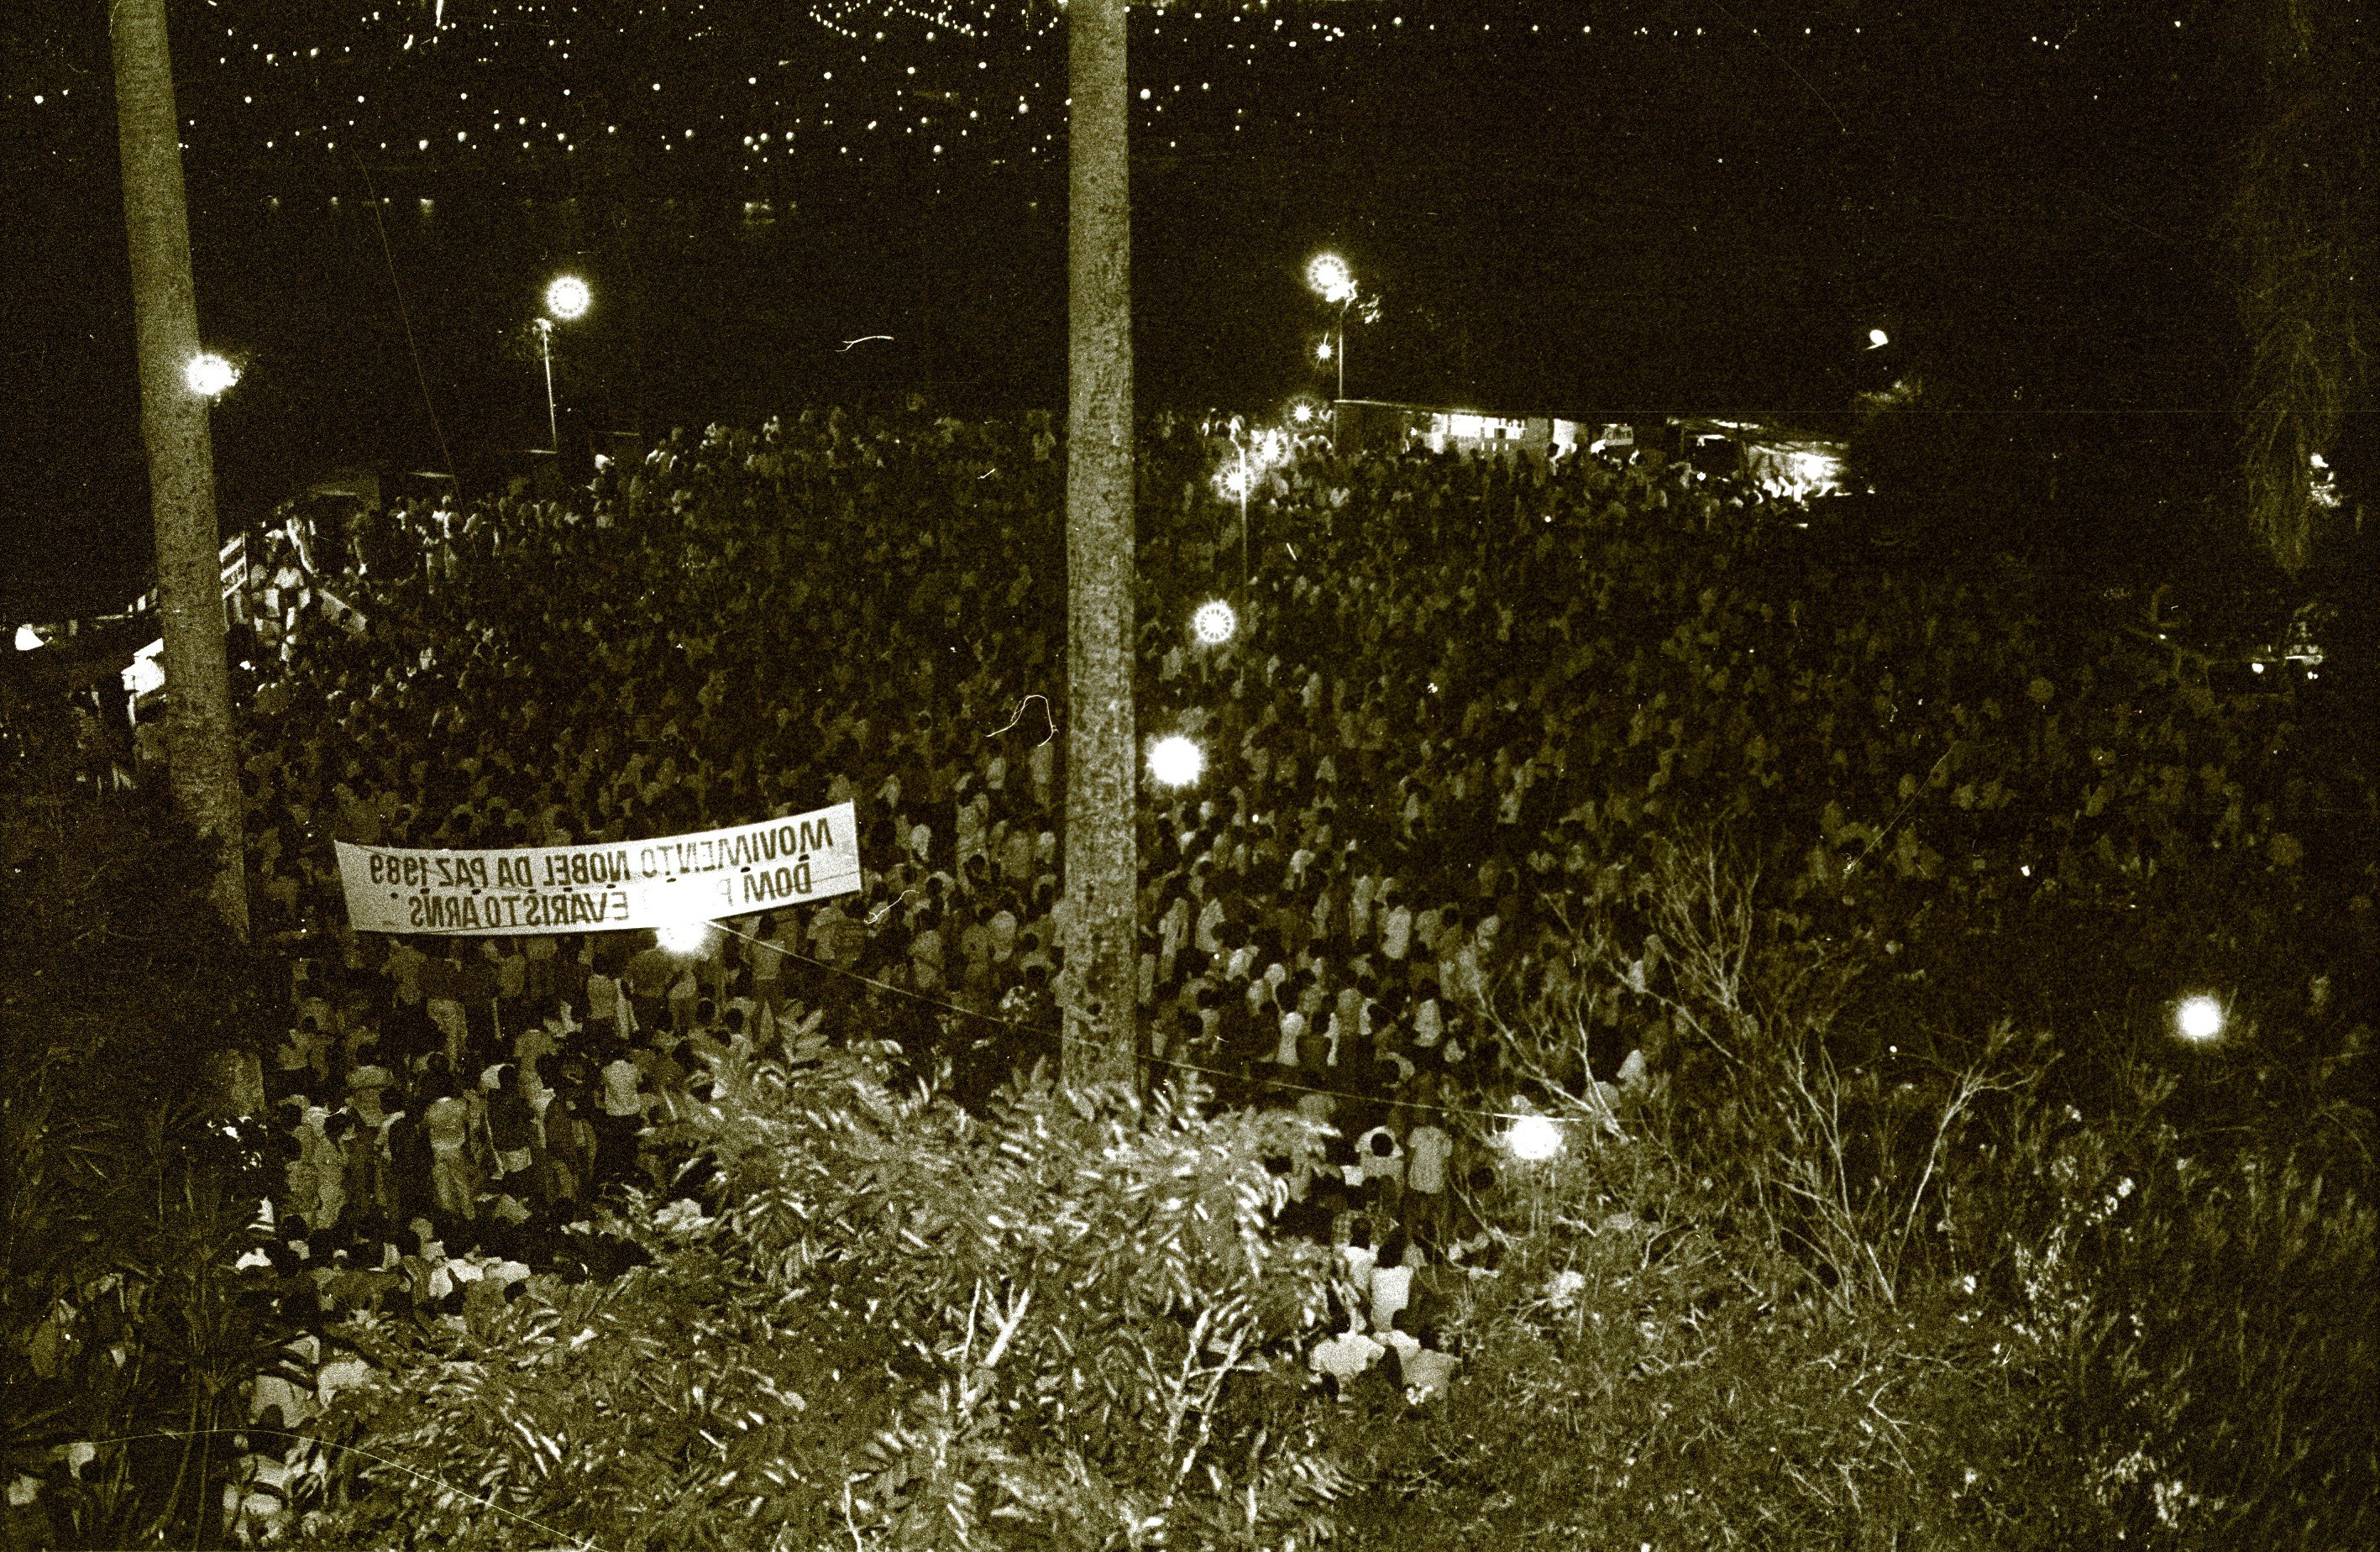 Tumulto em frente ao portão do Convento, em 1989